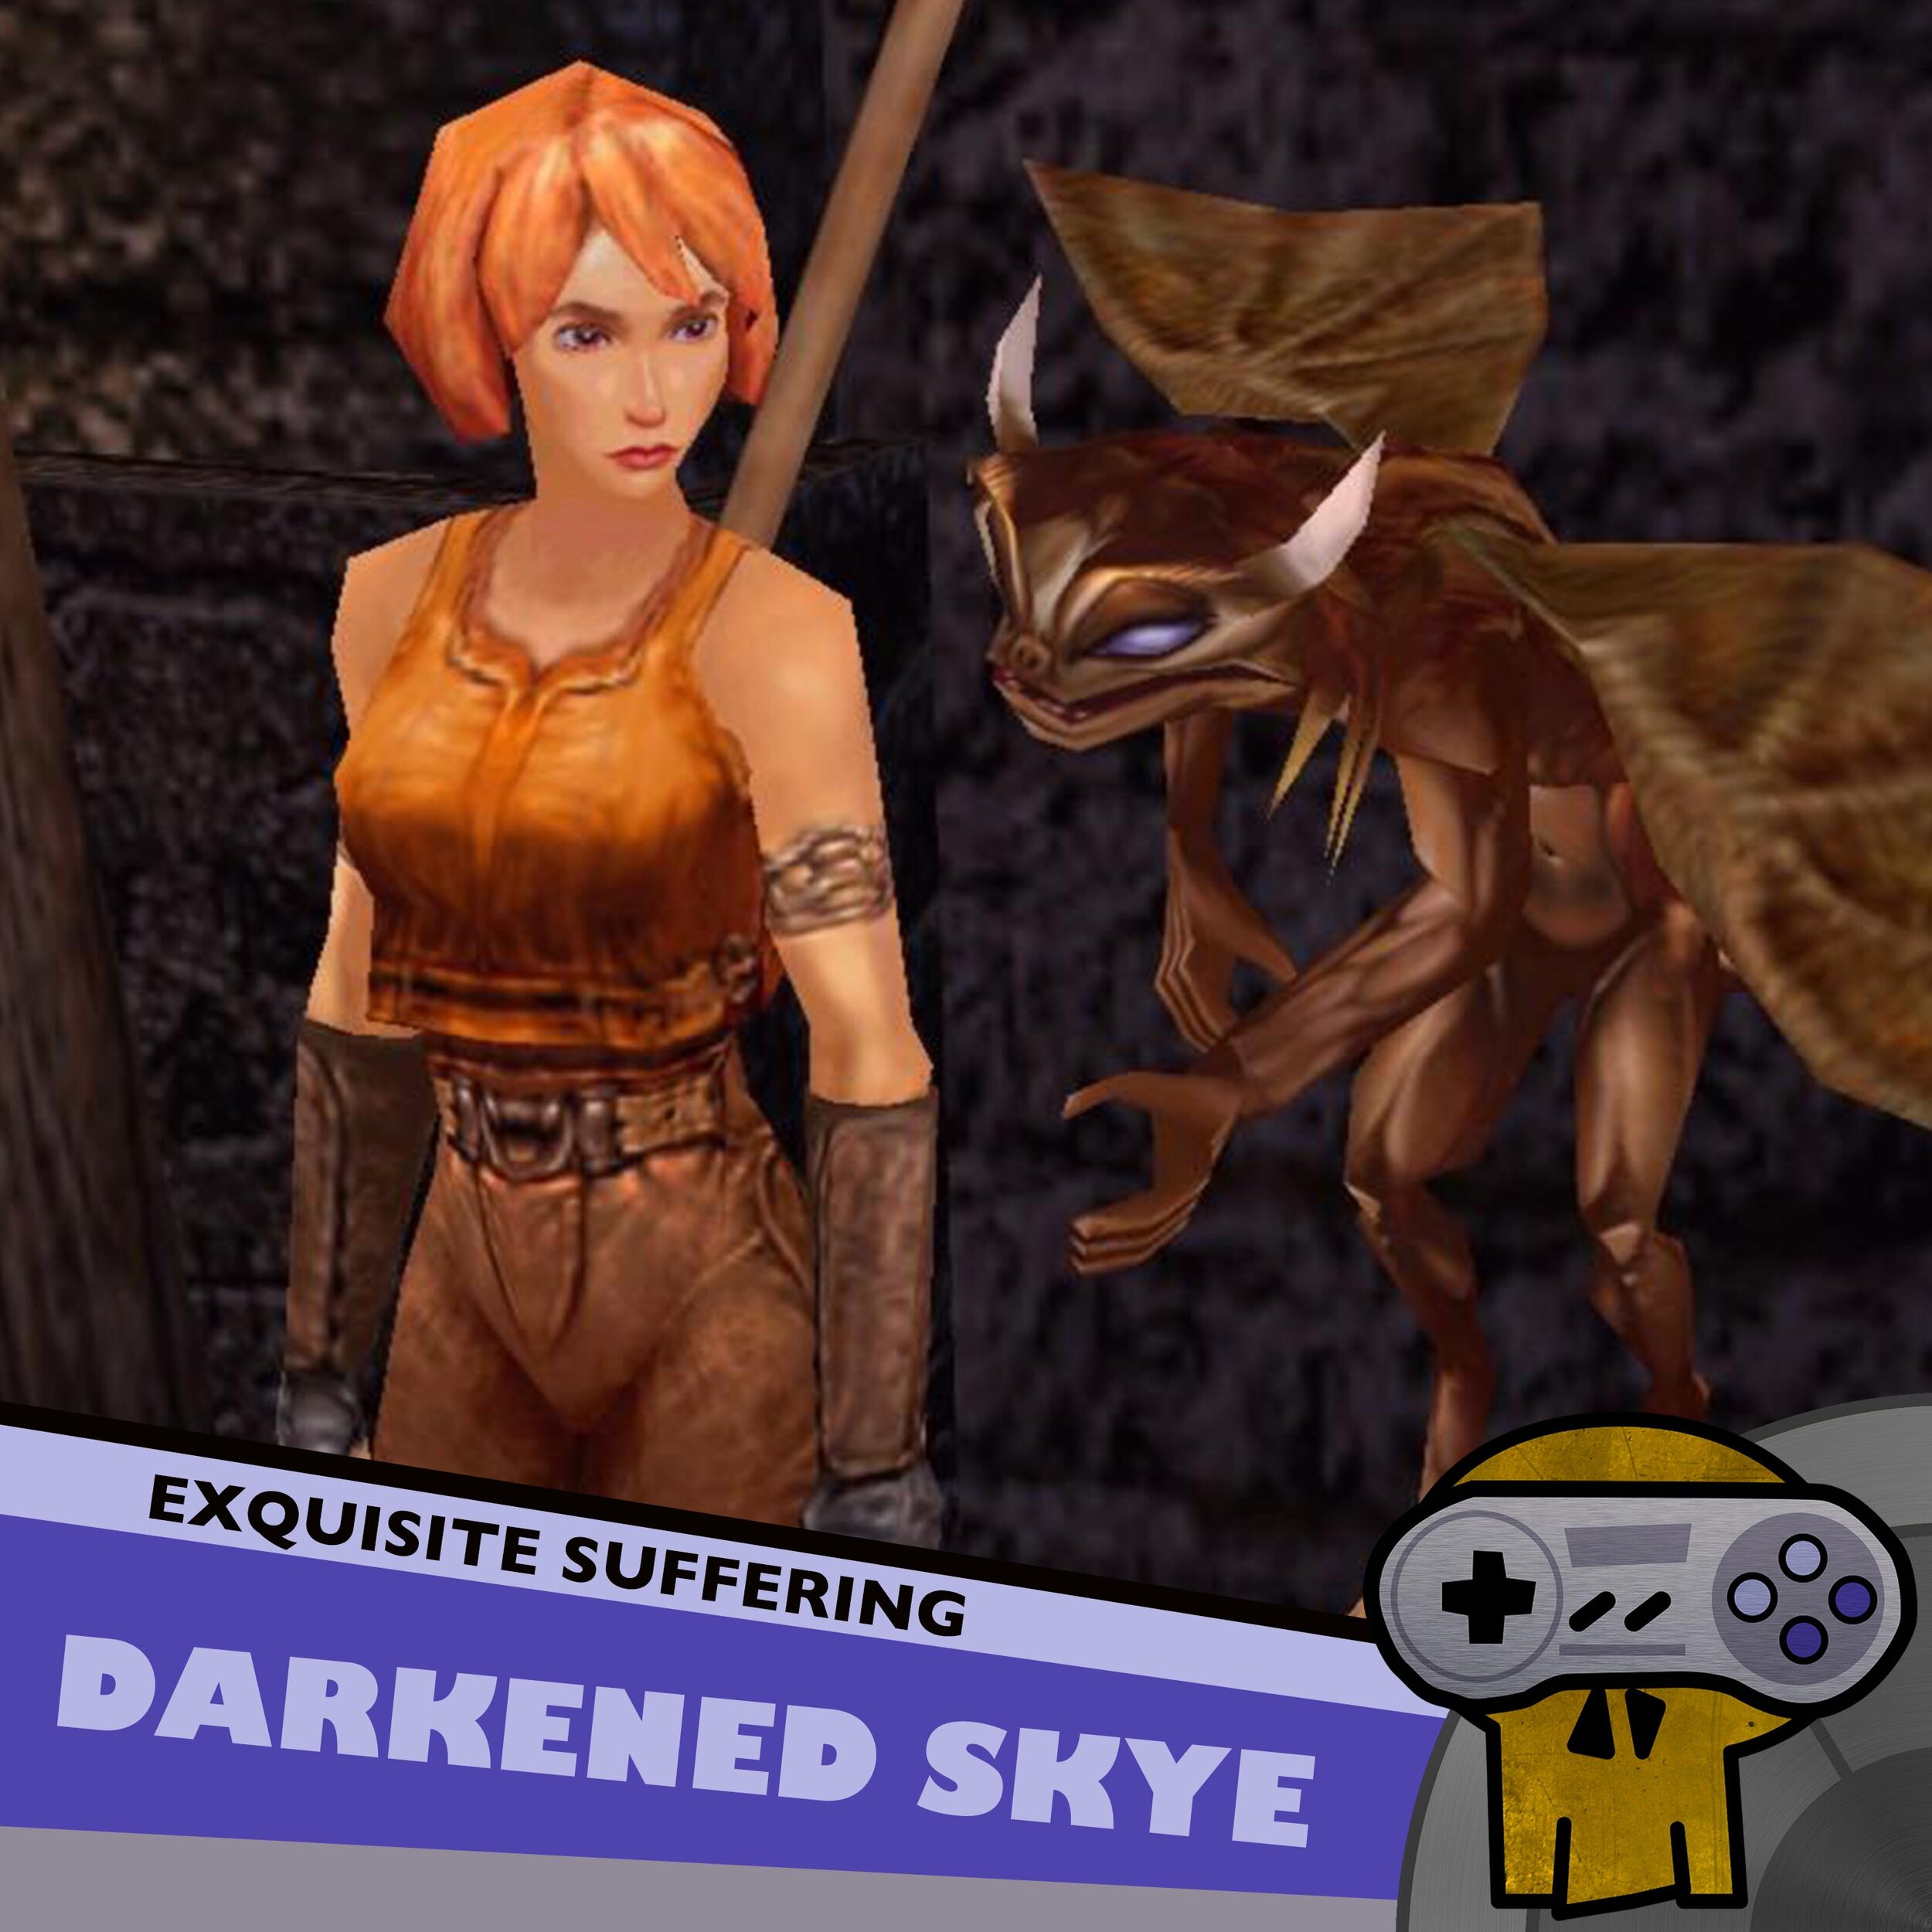 Darkened Skye